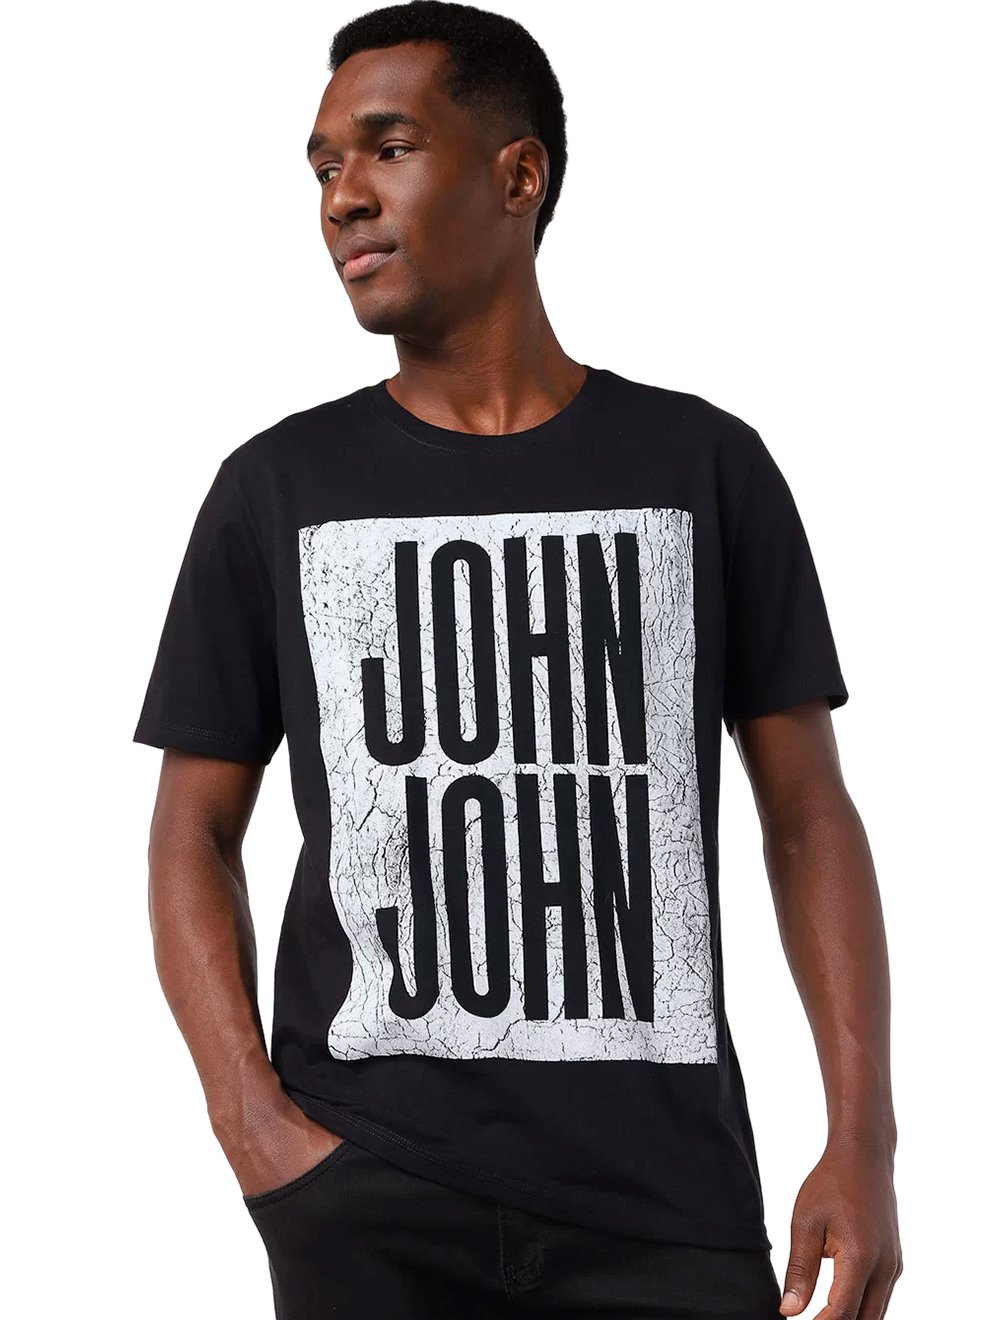 Camiseta John John Logo Verde - Compre Agora